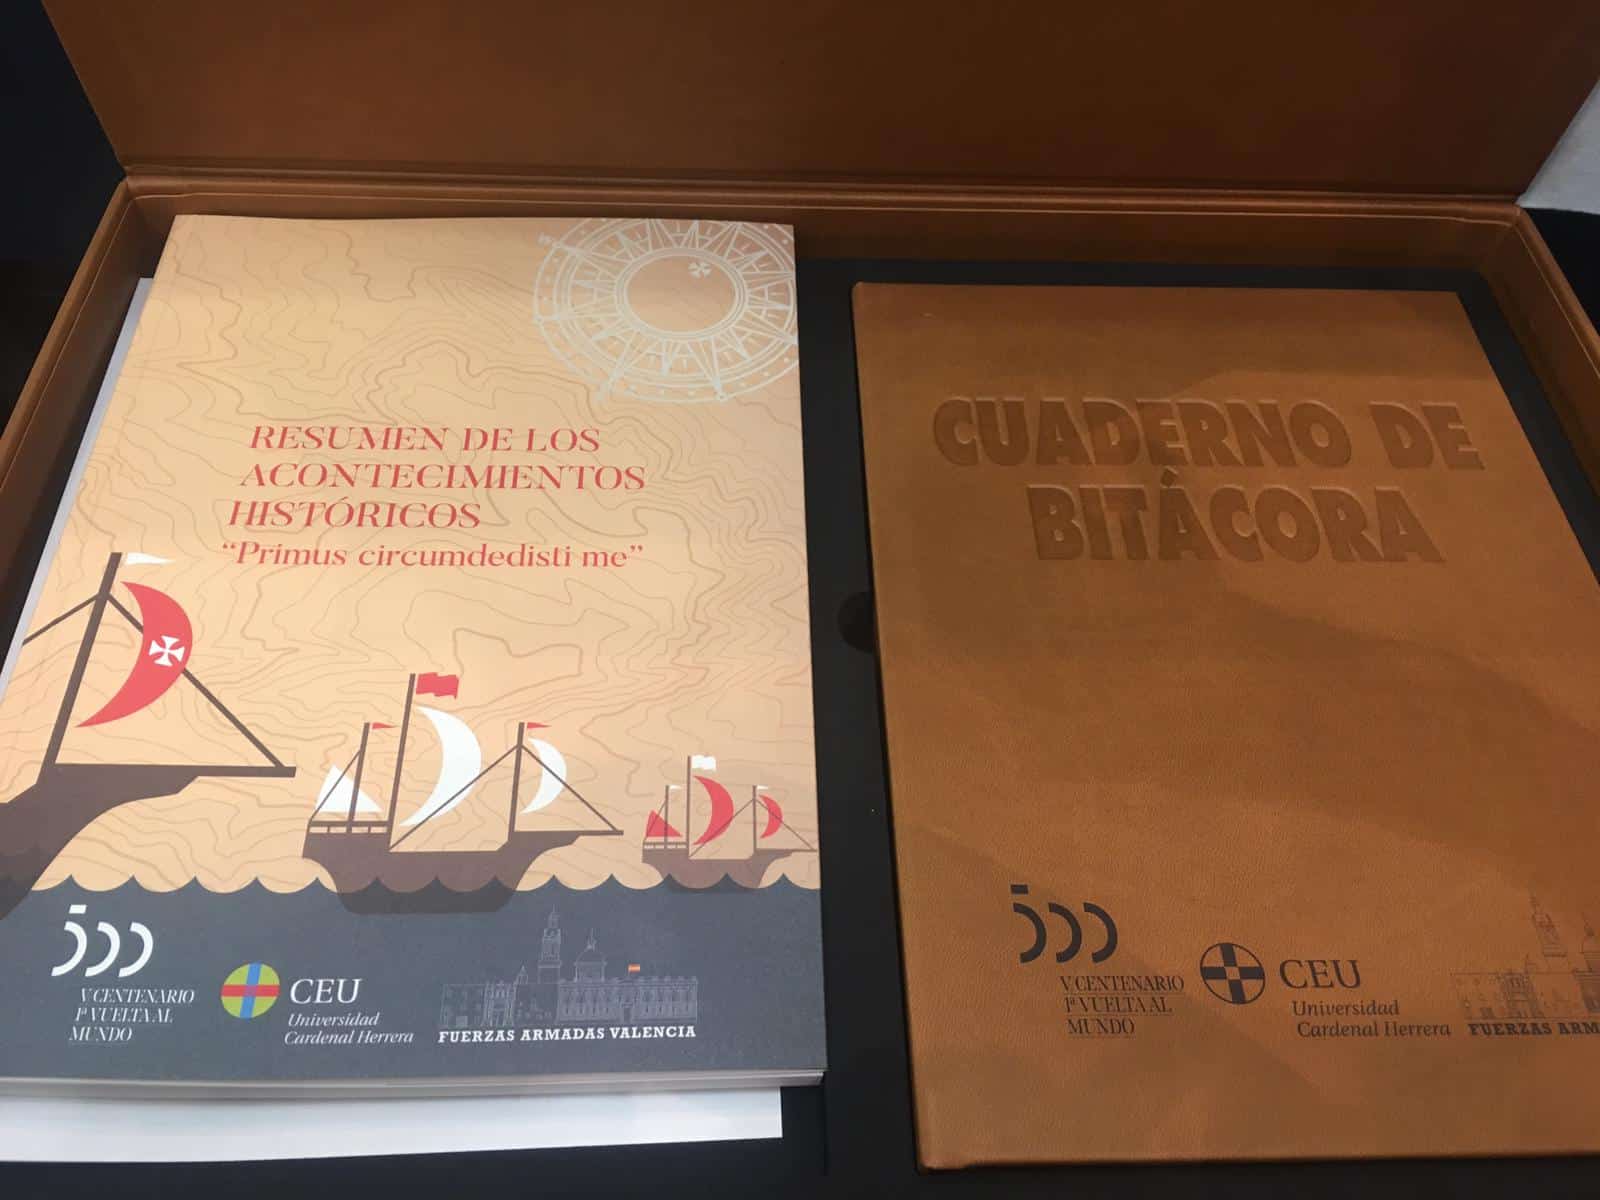 IMG 20190921 WA0001 1 "Cuadernos de bitácora": iniciativa pedagógica para conmemorar el V centenario de la primera vuelta al mundo (1519-2019)